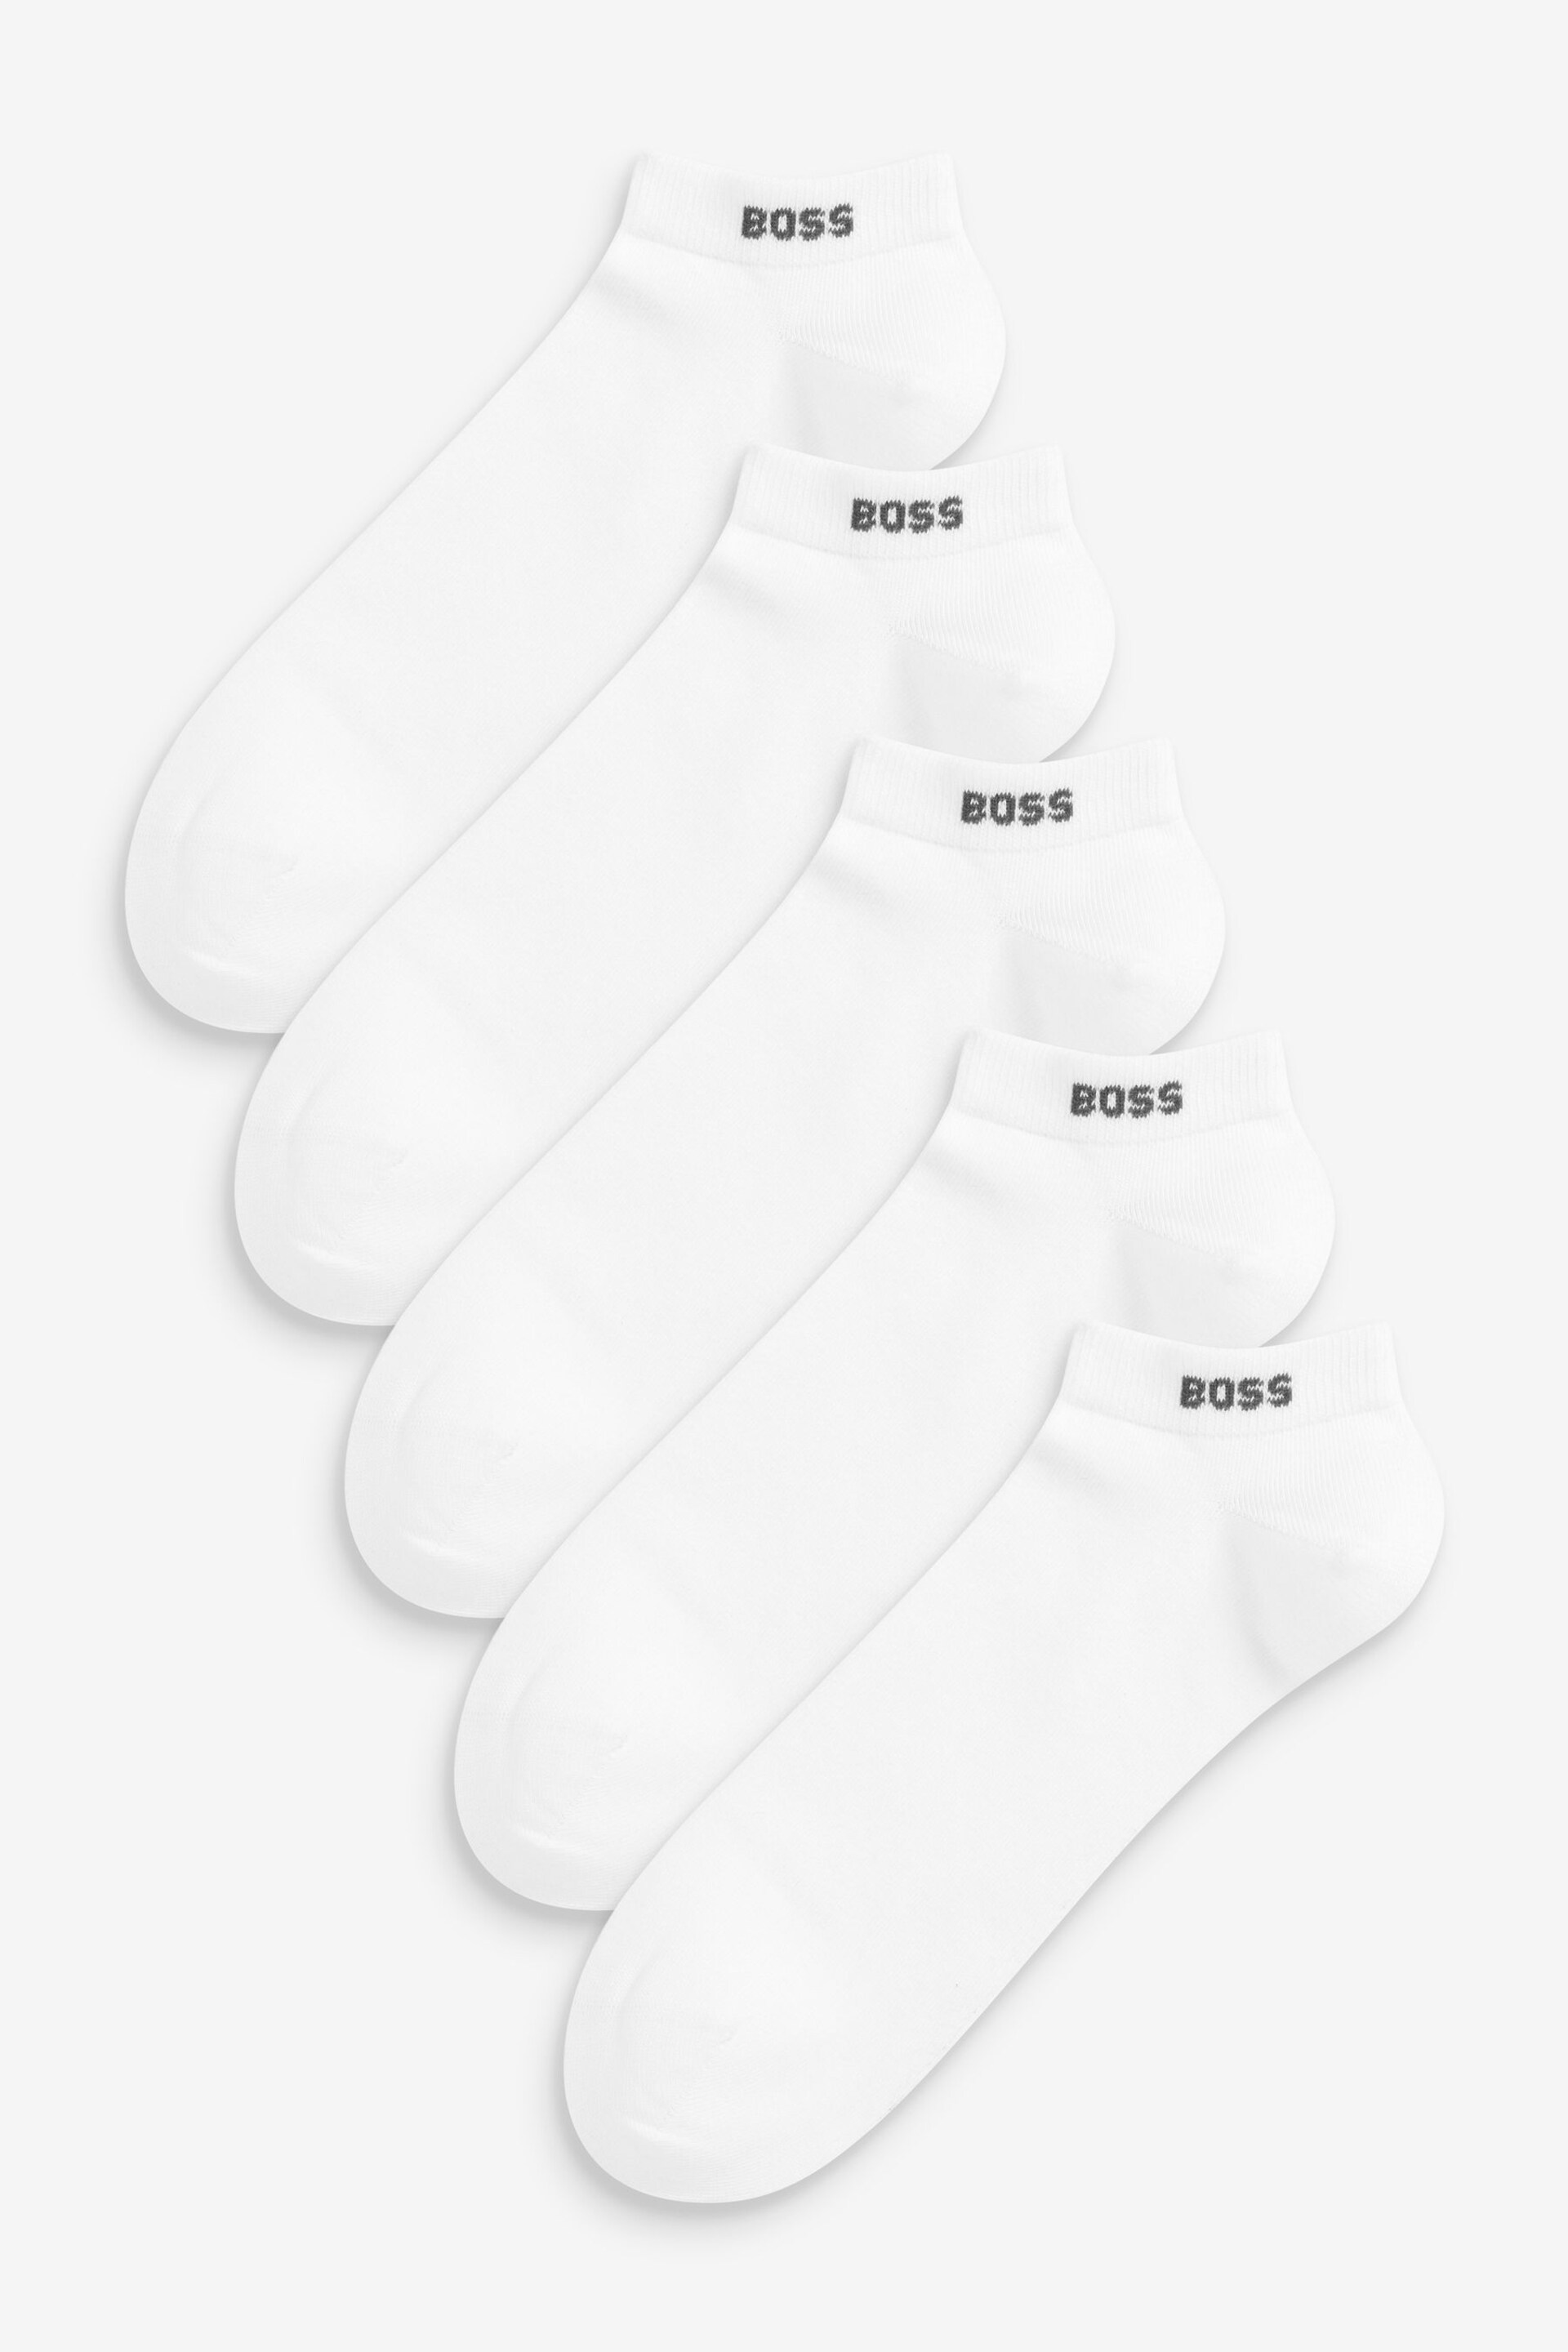 BOSS White Cotton Blend Logo Ankle Socks 5 Pack - Image 1 of 6